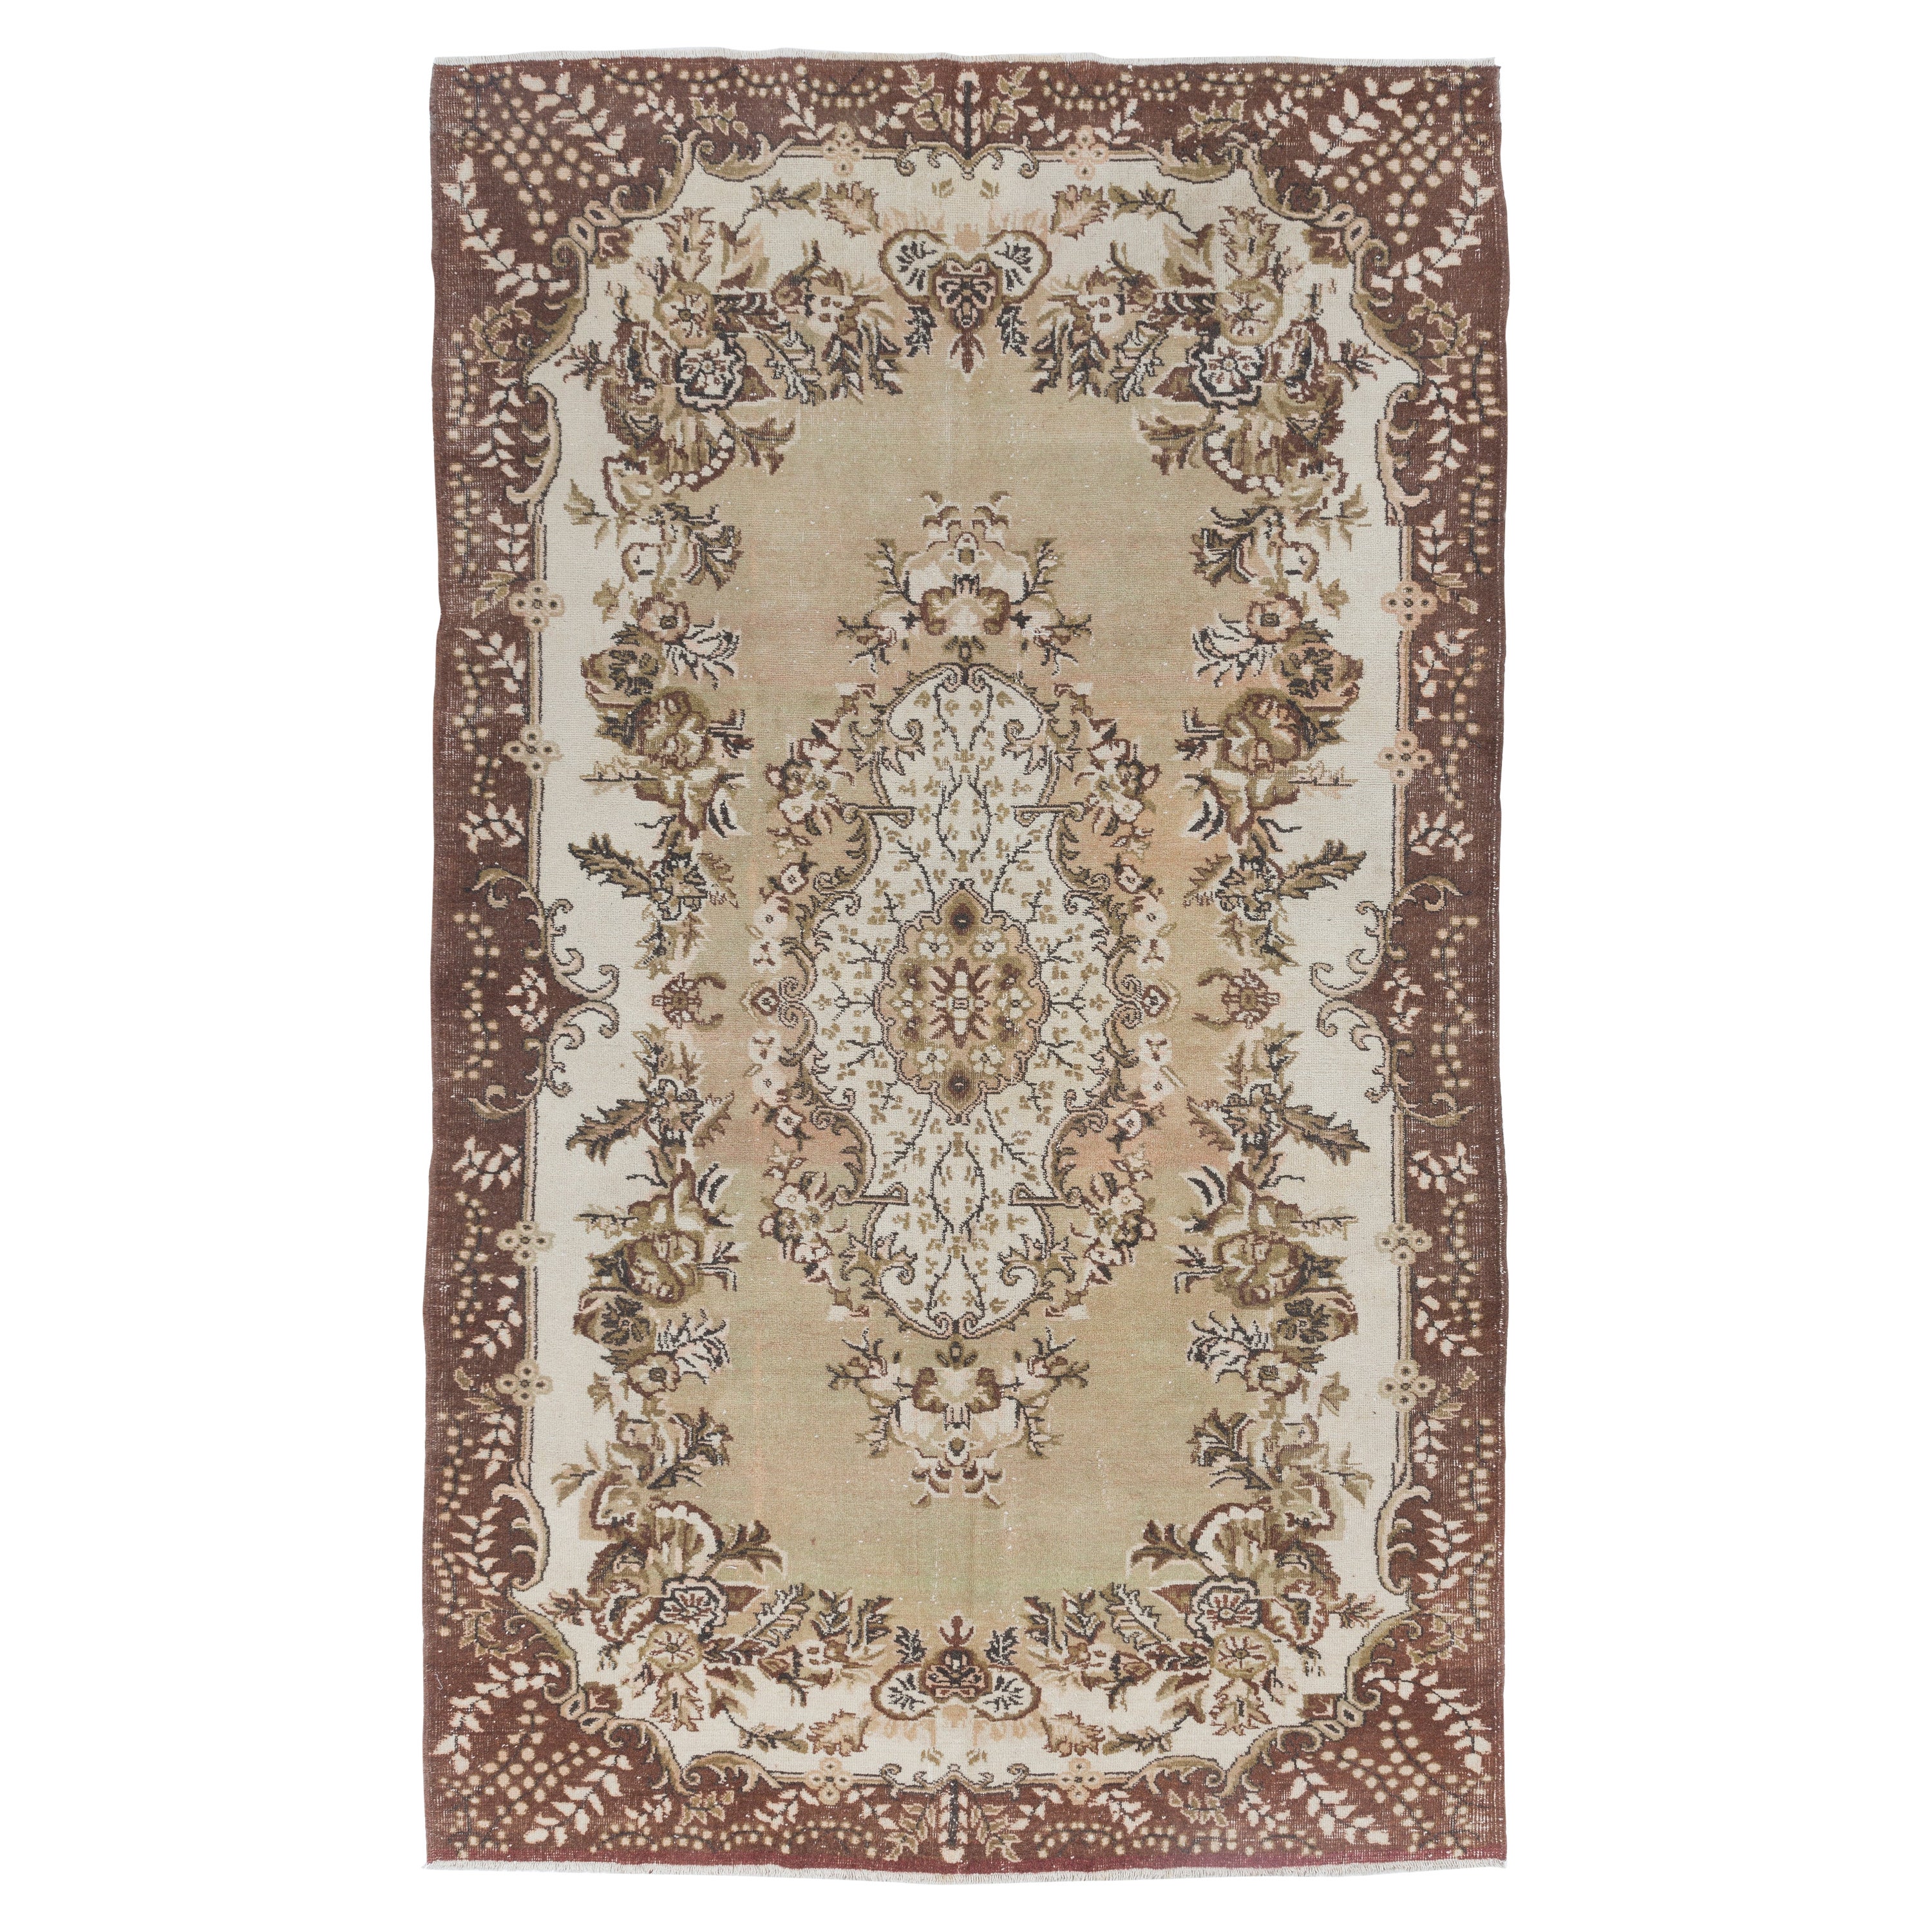 6.8x11,5 Ft feiner handgeknüpfter türkischer Vintage-Teppich aus Wolle mit Medaillon-Design